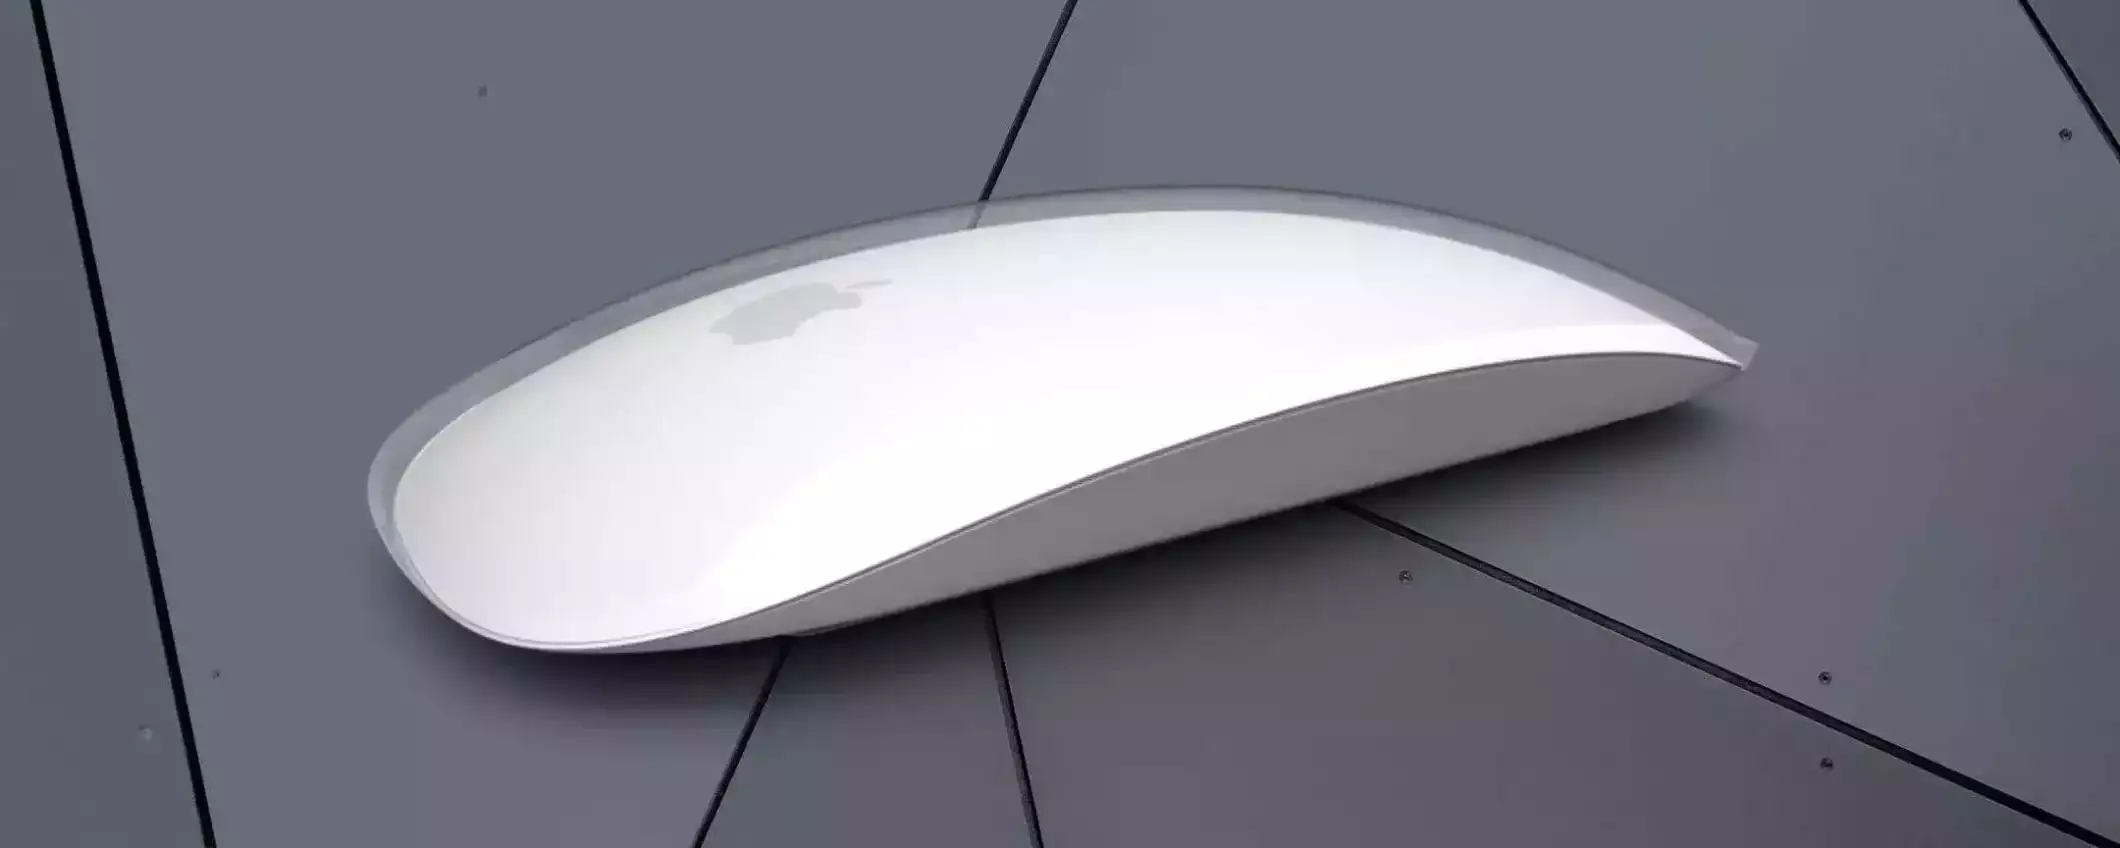 Magic Mouse di Apple: il miglior mouse che puoi comprare per il tuo Mac